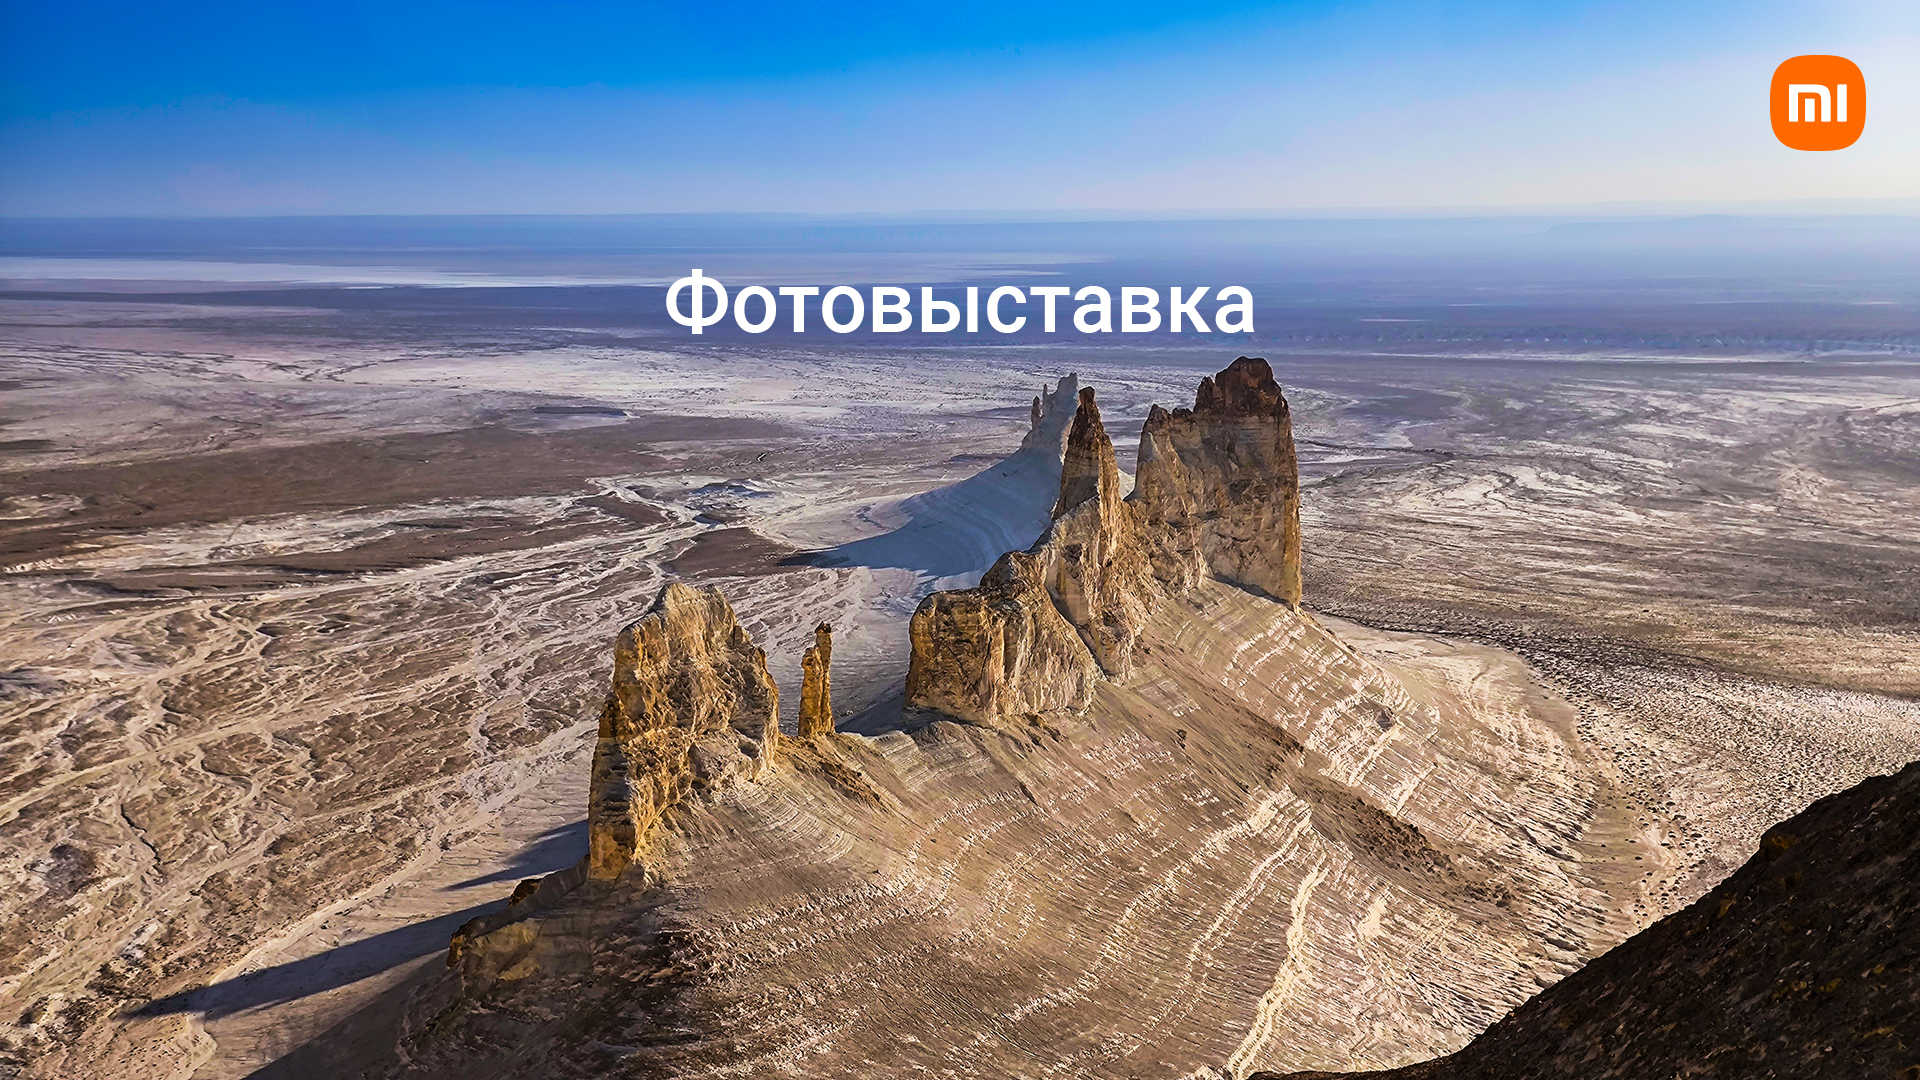 Неисследованные уголки Казахстана: Explore Jana Qazaqstan и National Geographic Qazaqstan при поддержке Xiaomi представляют уникальную фотовыставку